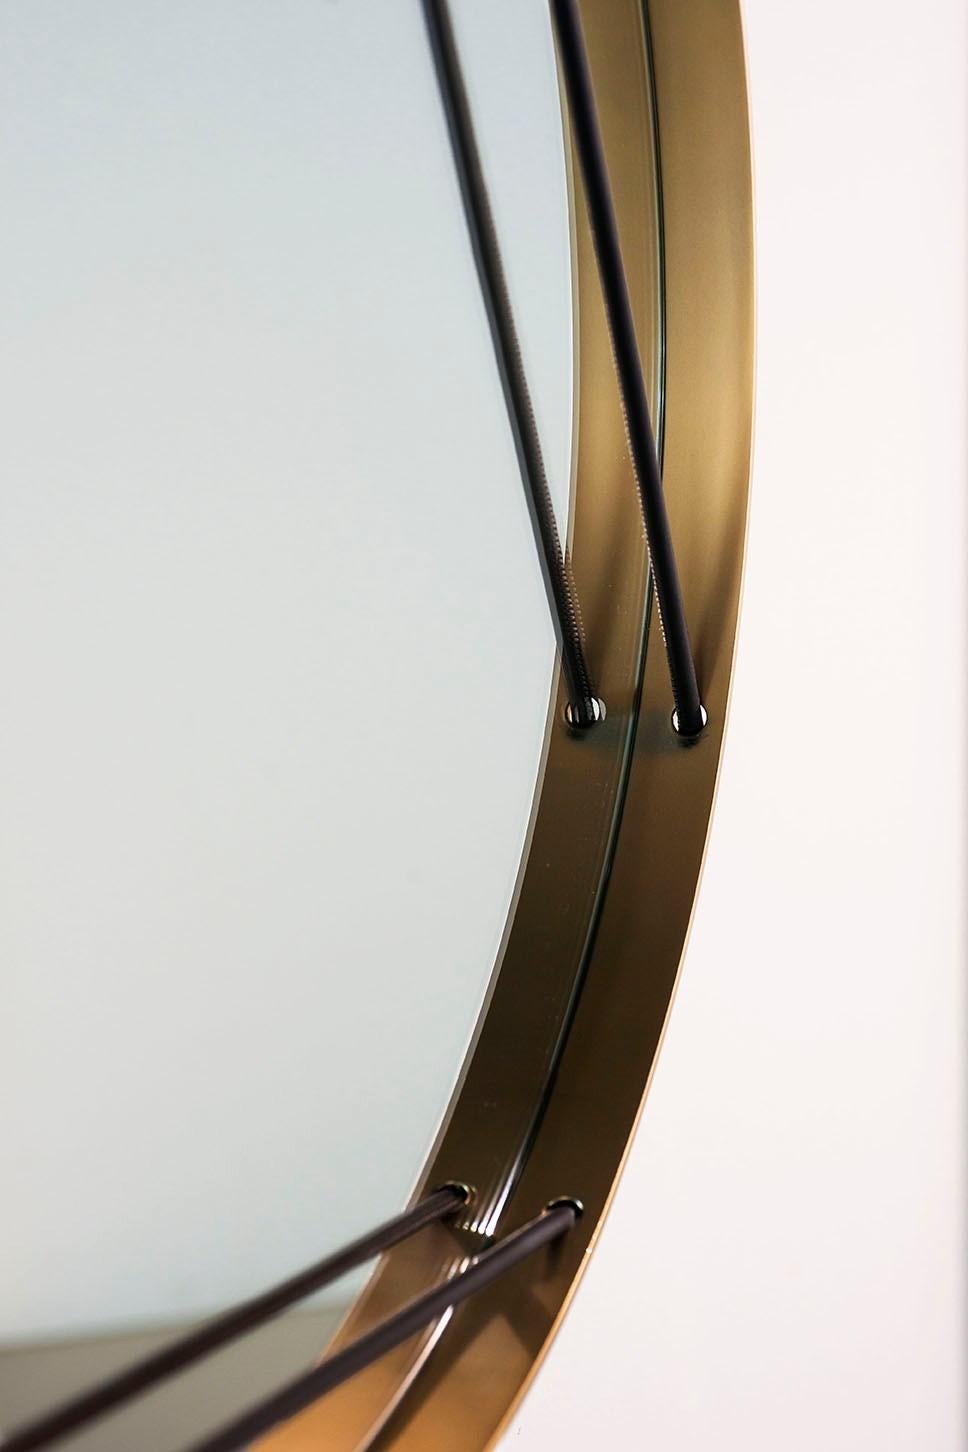 Designer: Giorgio Bonaguro
Der Spiegel ist ein bedeutungsvoller Gegenstand, ein Objekt und zugleich ein Spiegelbild: wie ein Schmuckstück, das sowohl Schmuck als auch Spiegelbild einer Persönlichkeit ist. Inspiriert von dieser Ähnlichkeit hat